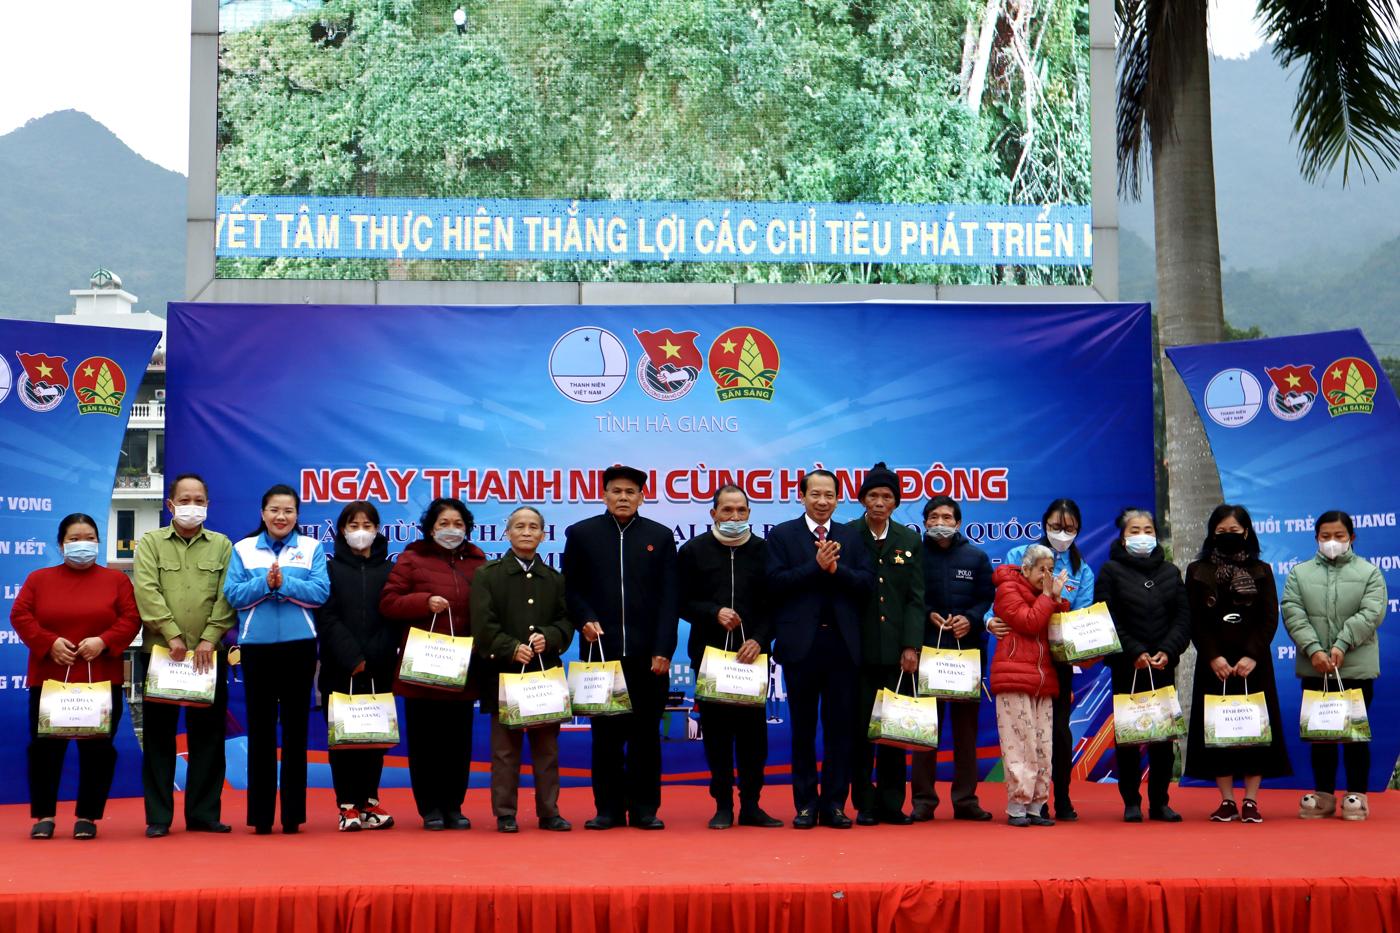 Phó chủ tịch UBND tỉnh Trần Đức Quý cùng Bí thư Tỉnh đoàn trao quà tặng cho các gia đình có hoàn cành khó khăn